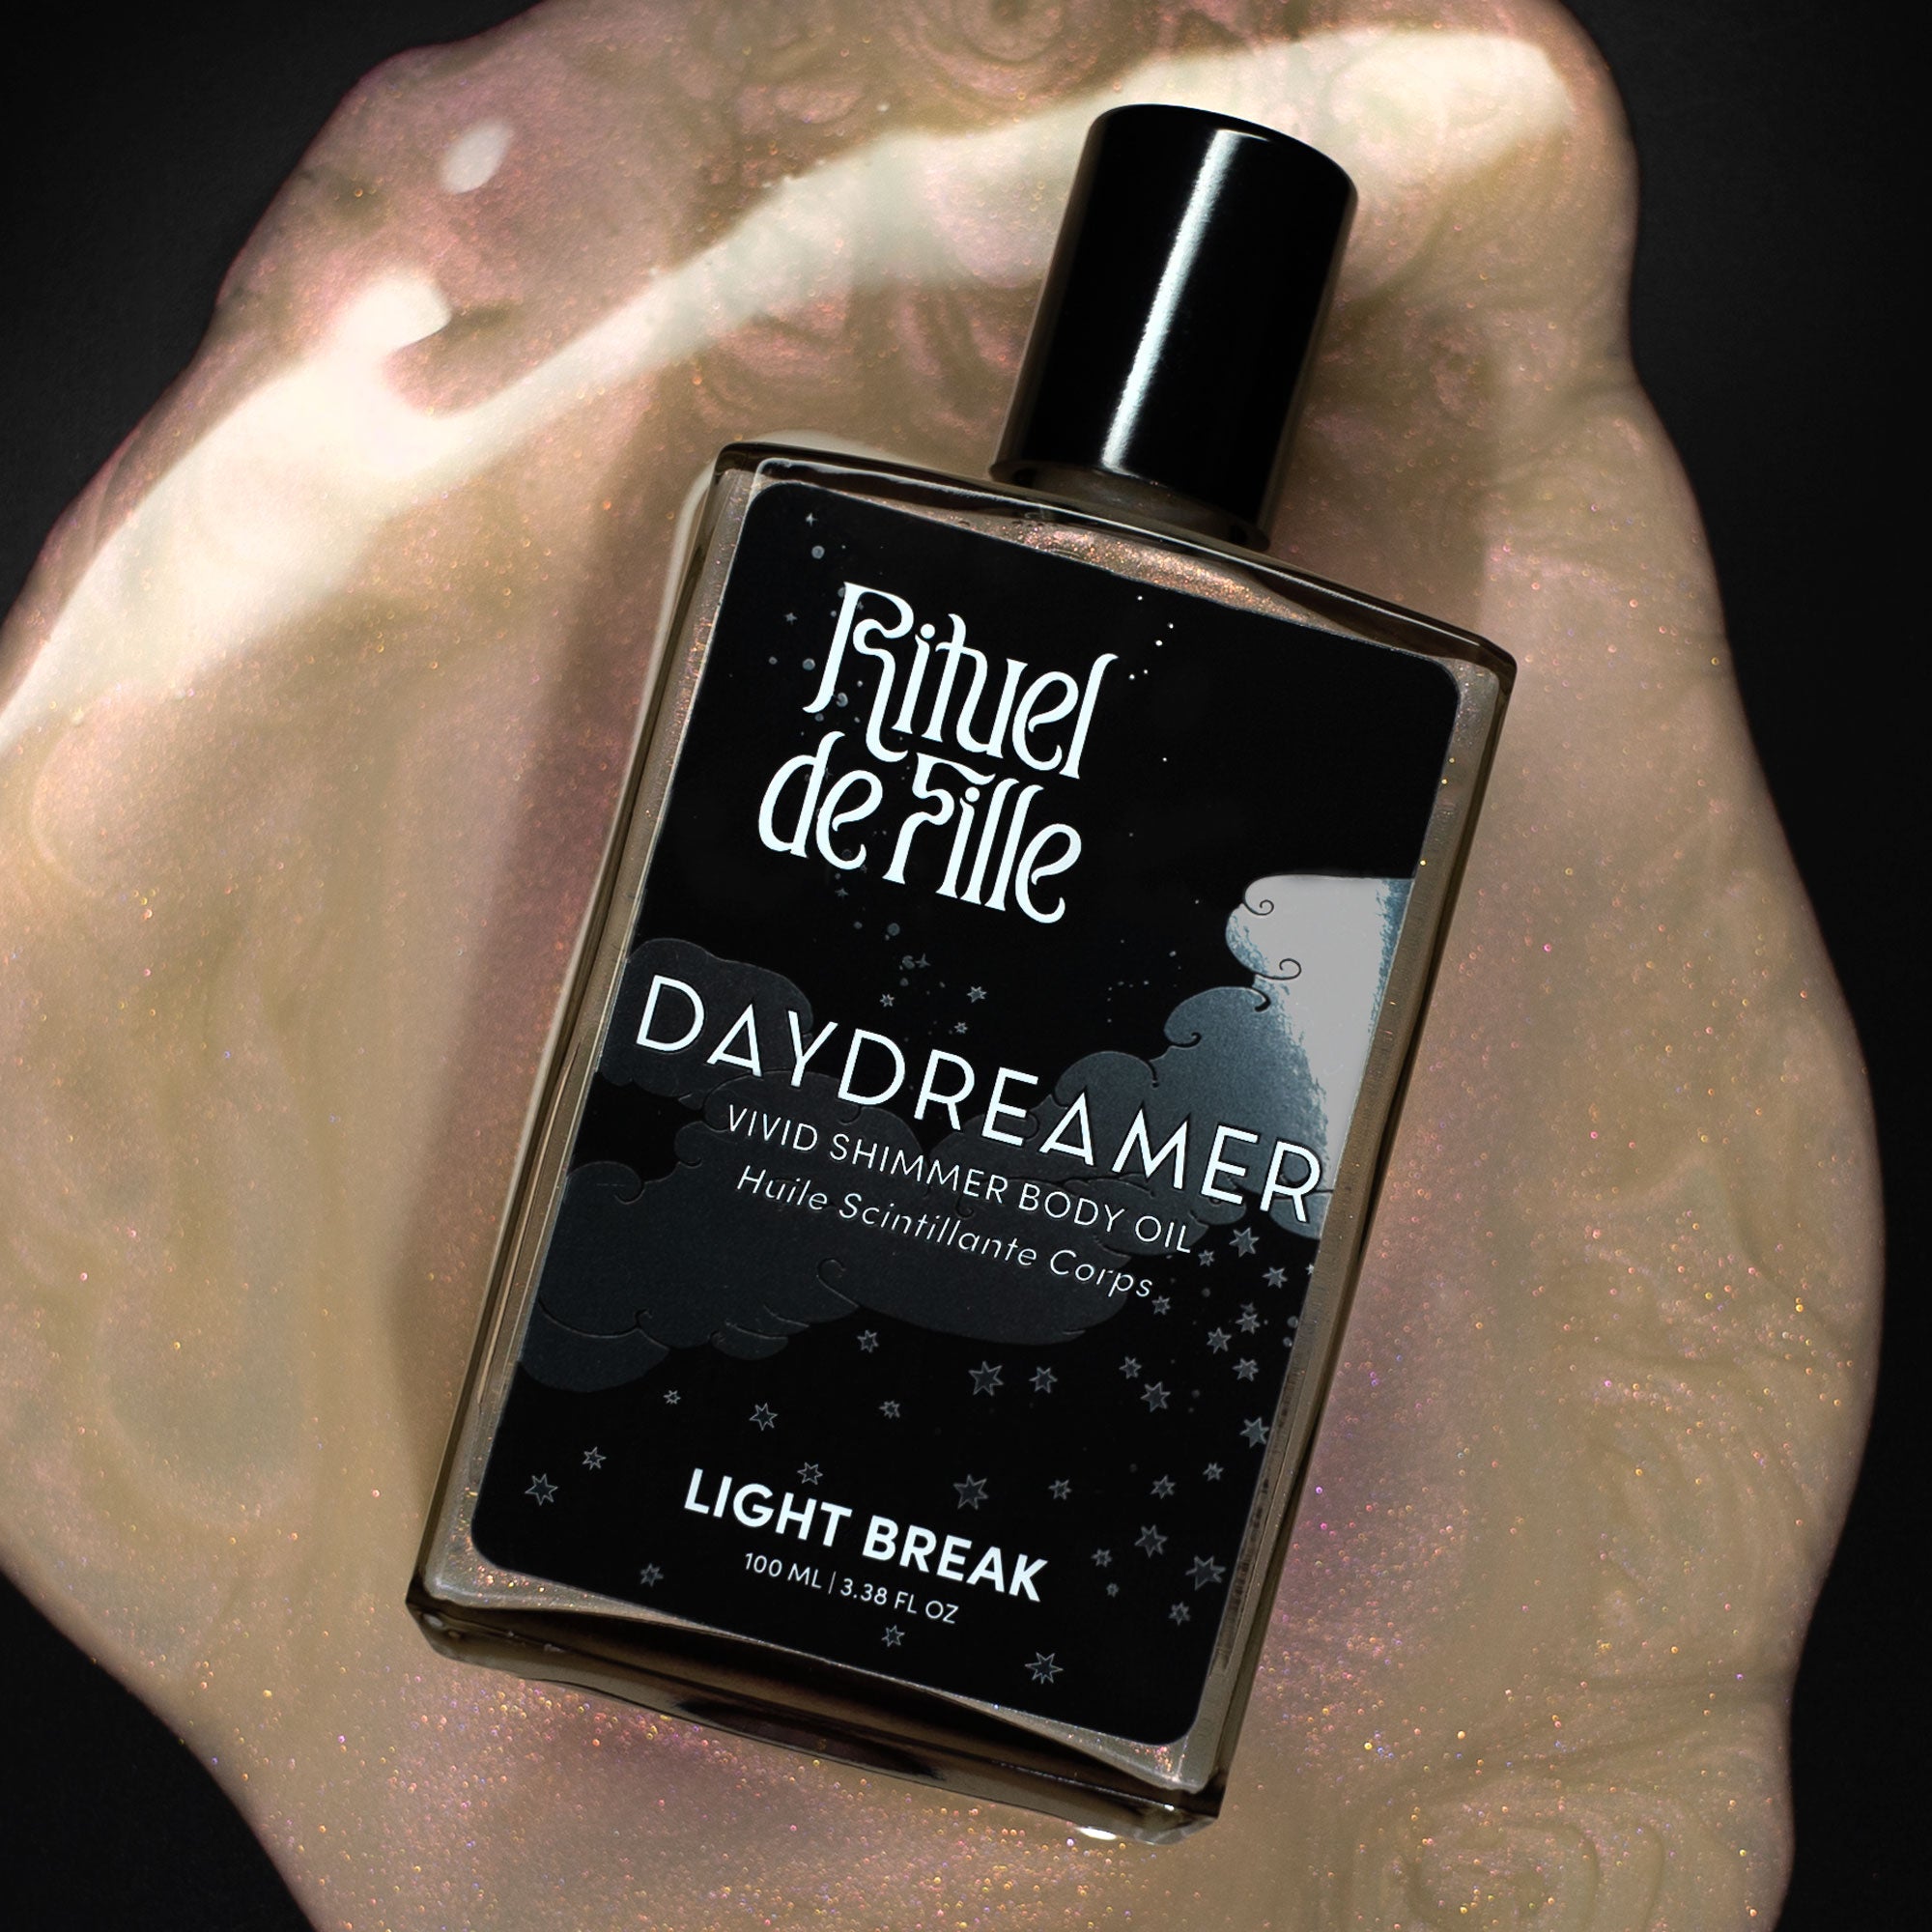 Light Break | Daydreamer Body Oil - Rituel de Fille